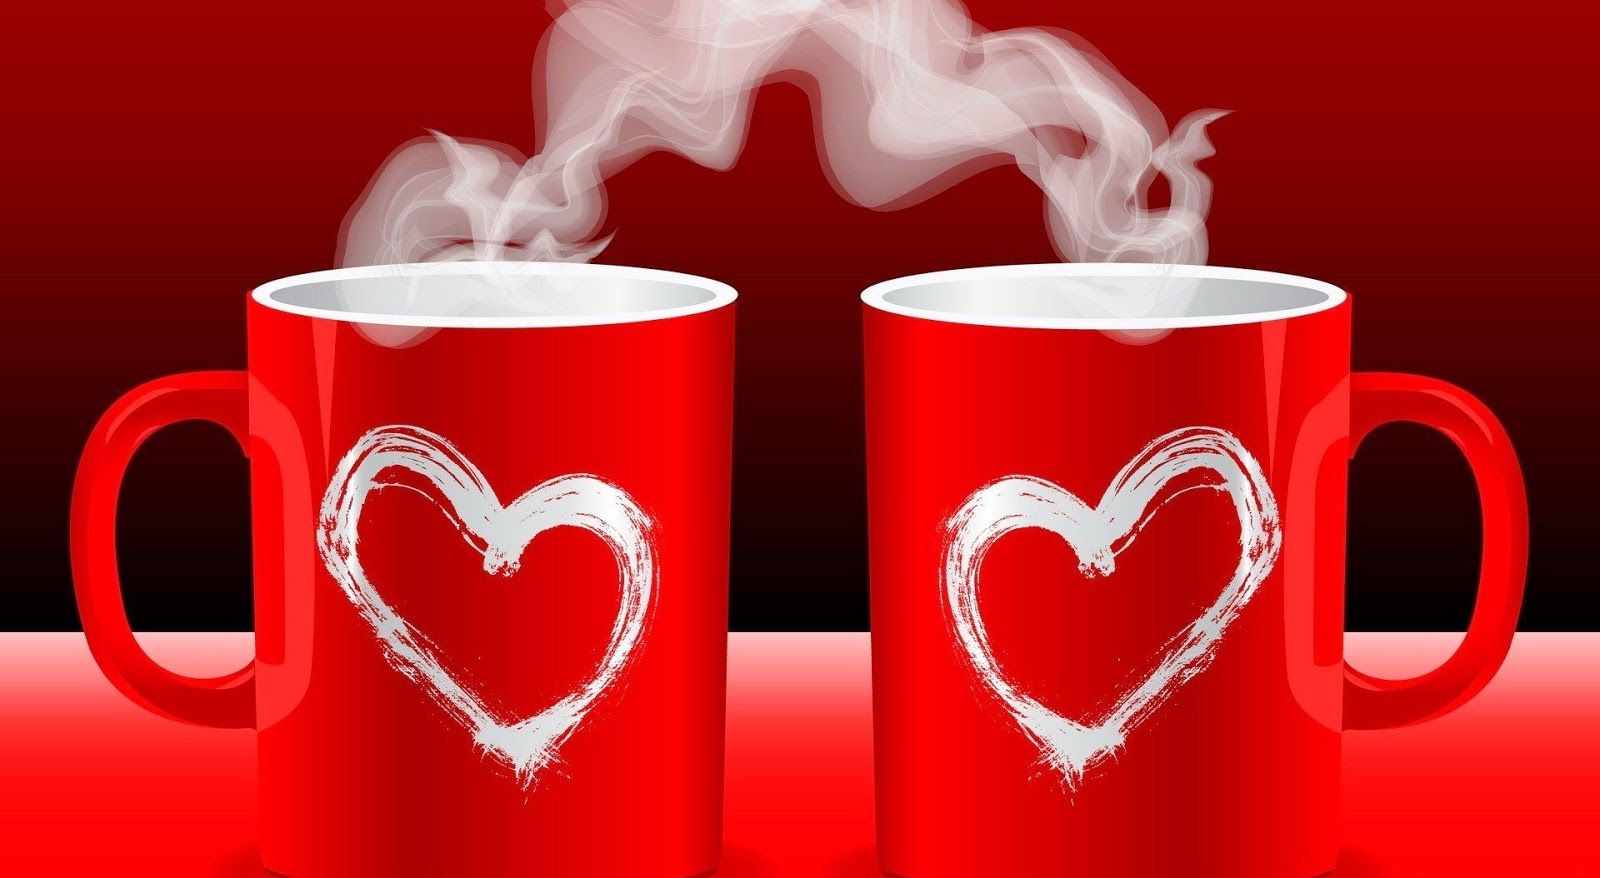 おはよう壁紙,マグ,コーヒーカップ,心臓,赤,カップ